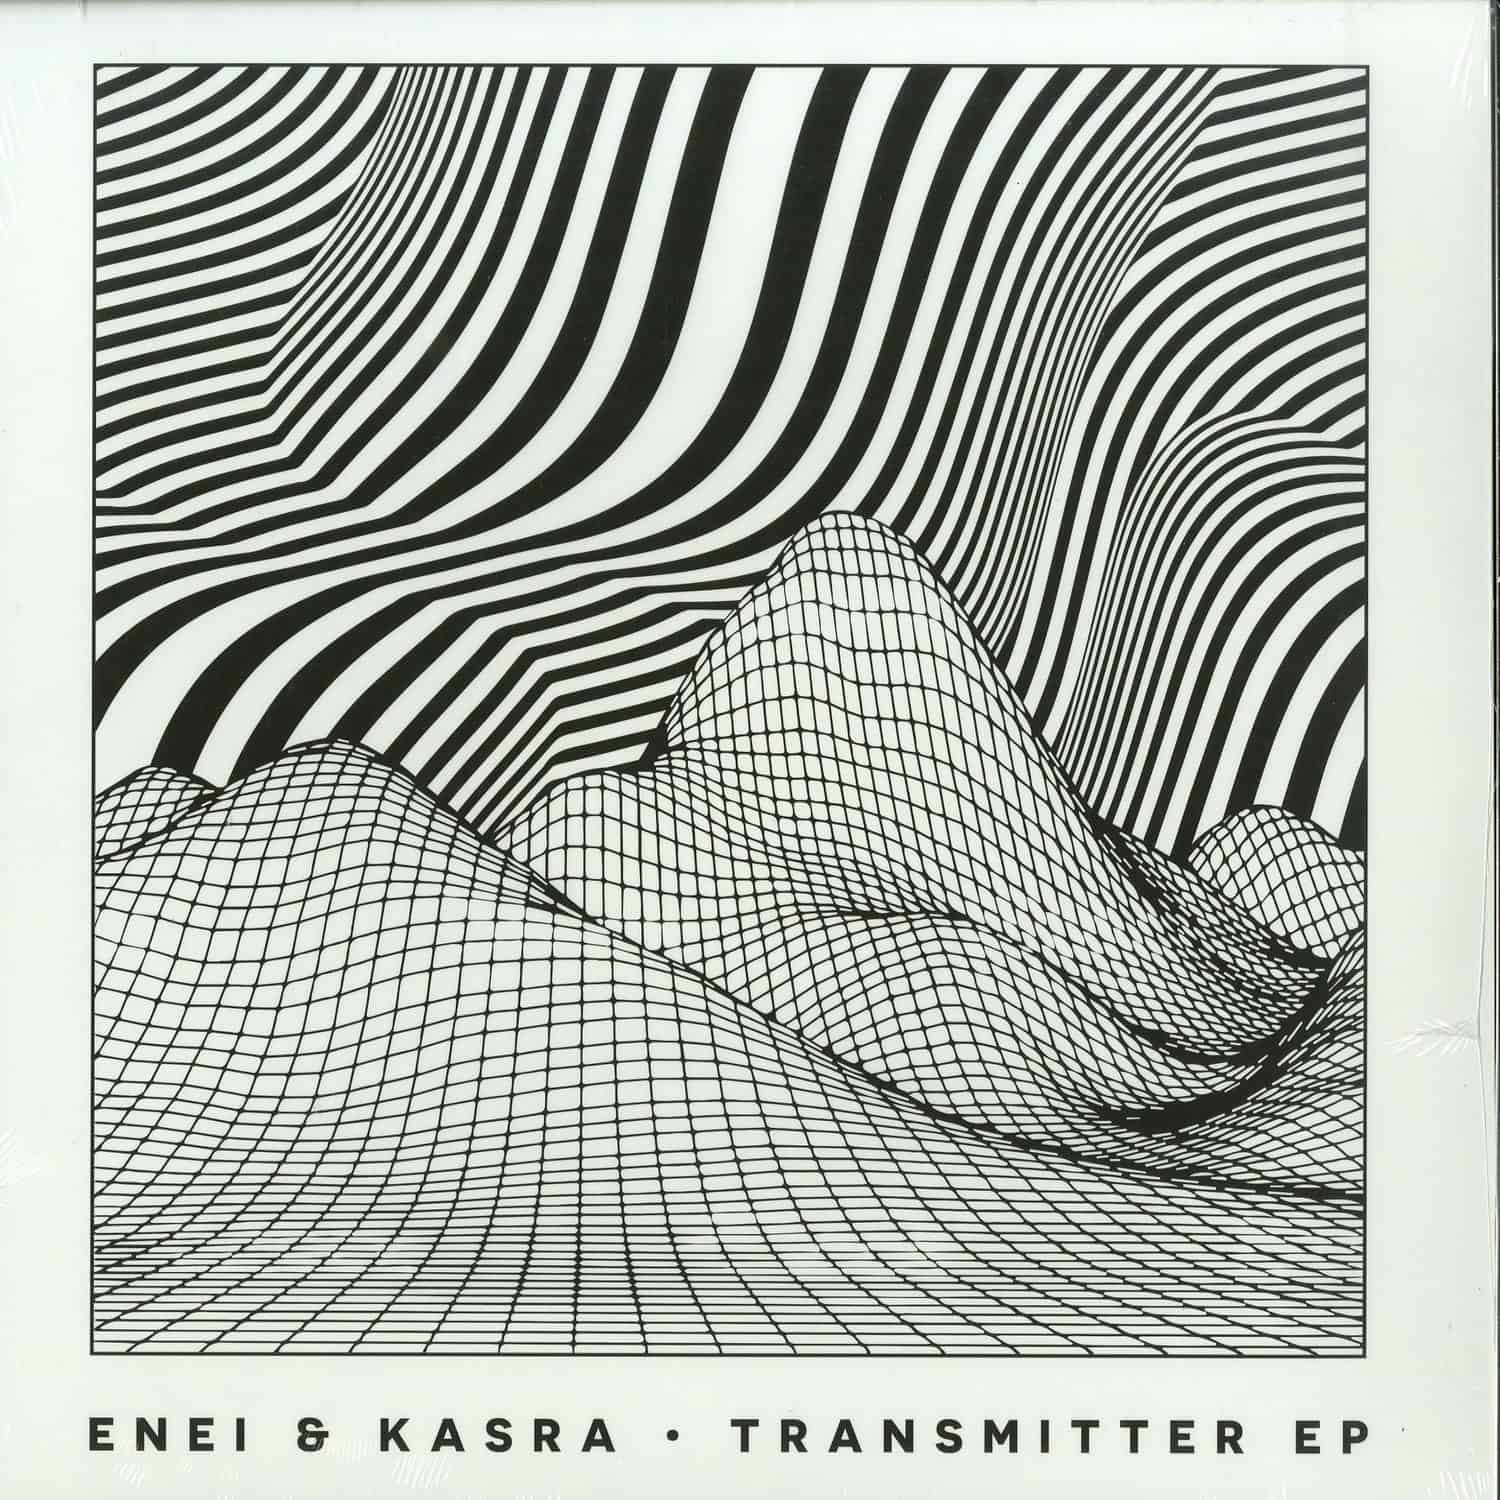 Enei & Kasra - TRANSMITTER EP